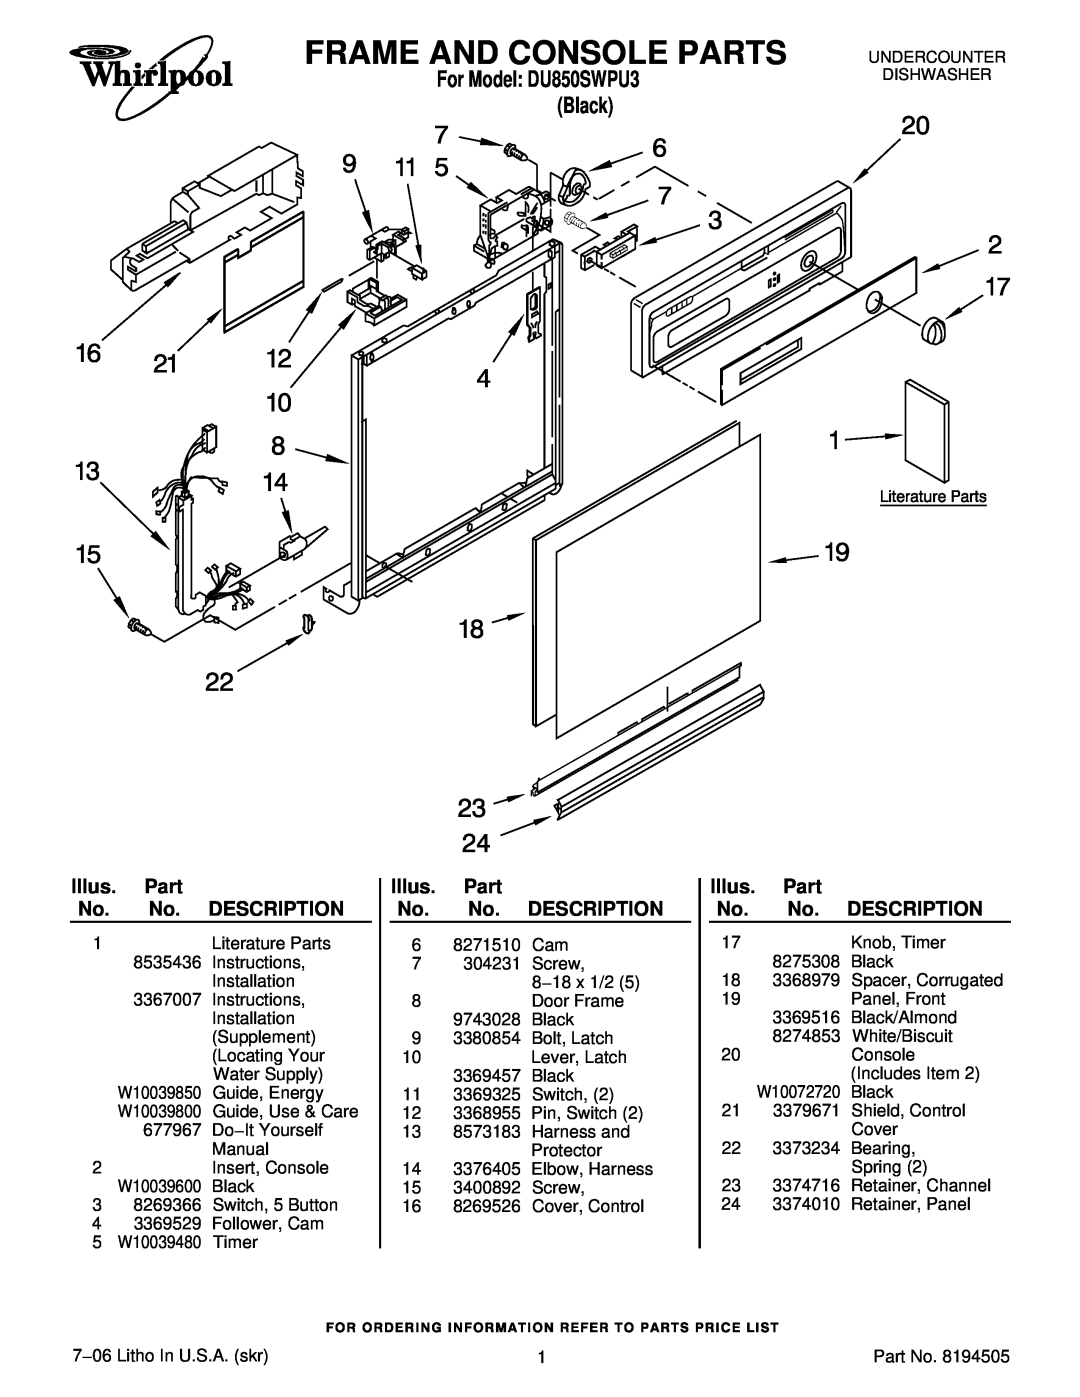 Whirlpool DU850SWPU3 manual Frame And Console Parts, Description, Illus. Part No. No. DESCRIPTION 